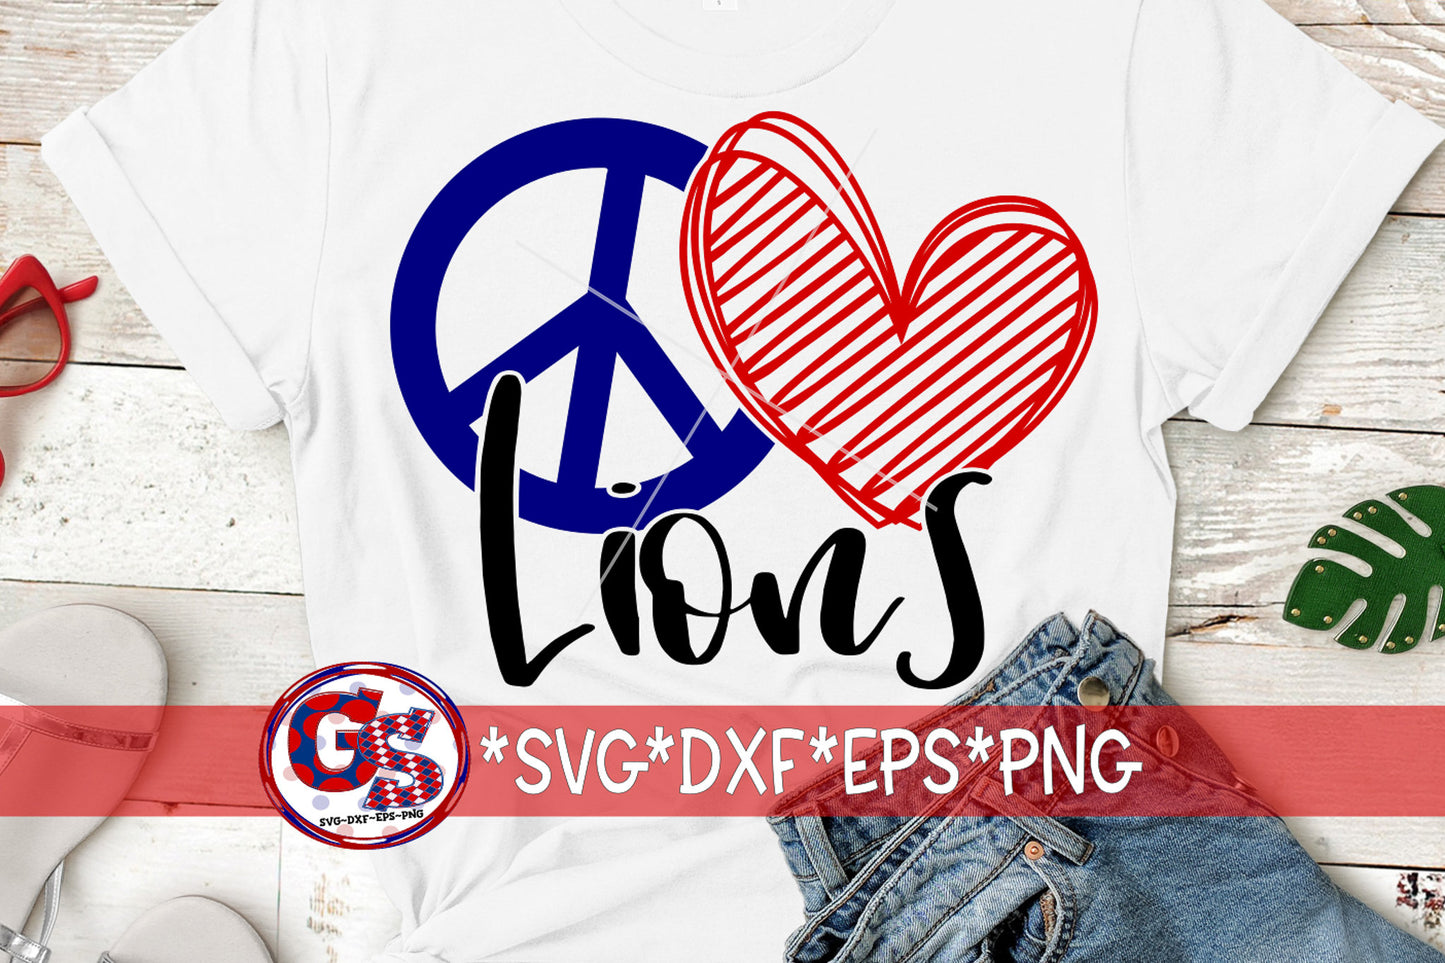 Lions SvG | Peace Love Lions svg dxf eps png. Peace Love Lions SvG | Peace Love Lions DxF | Lions SvG | Lions | Instant Download Cut File